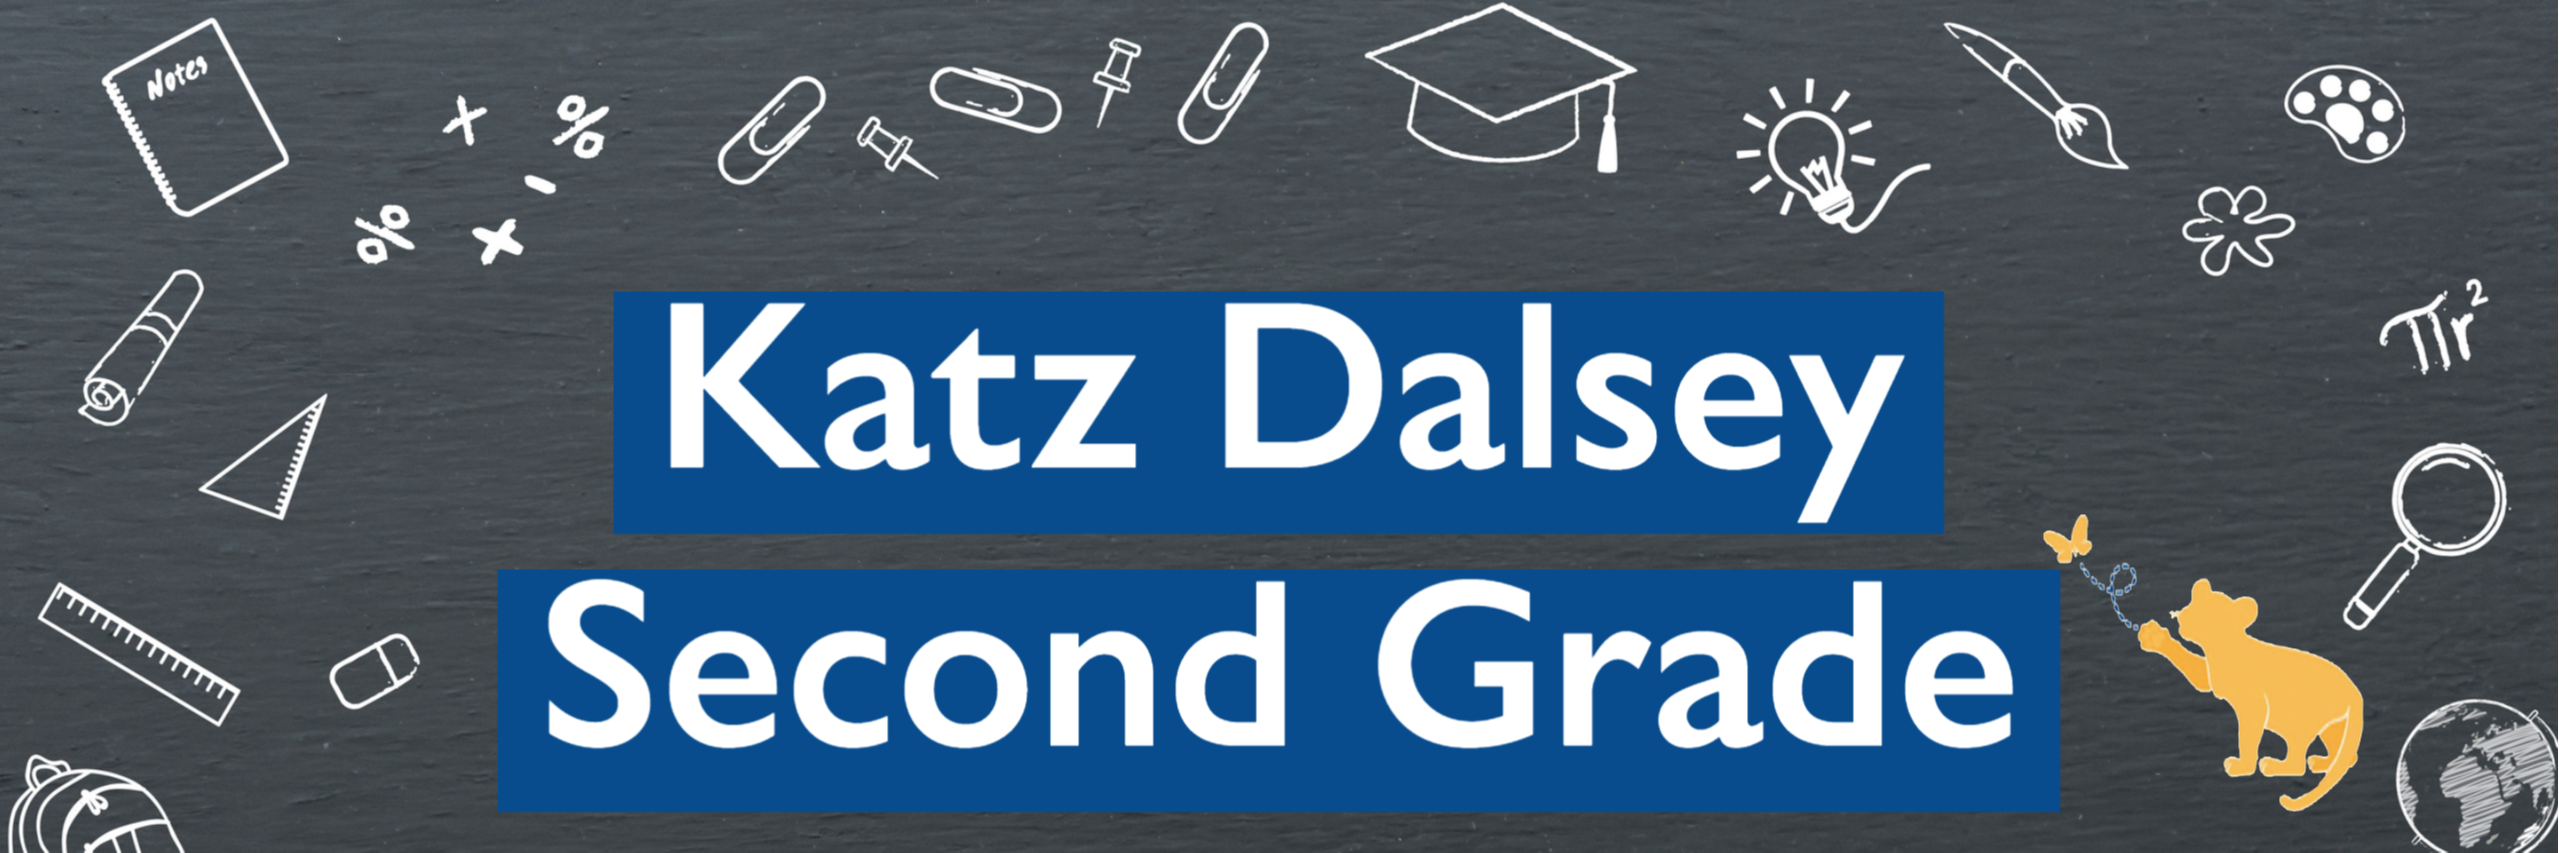 KATZ Dalsey 2nd Grade